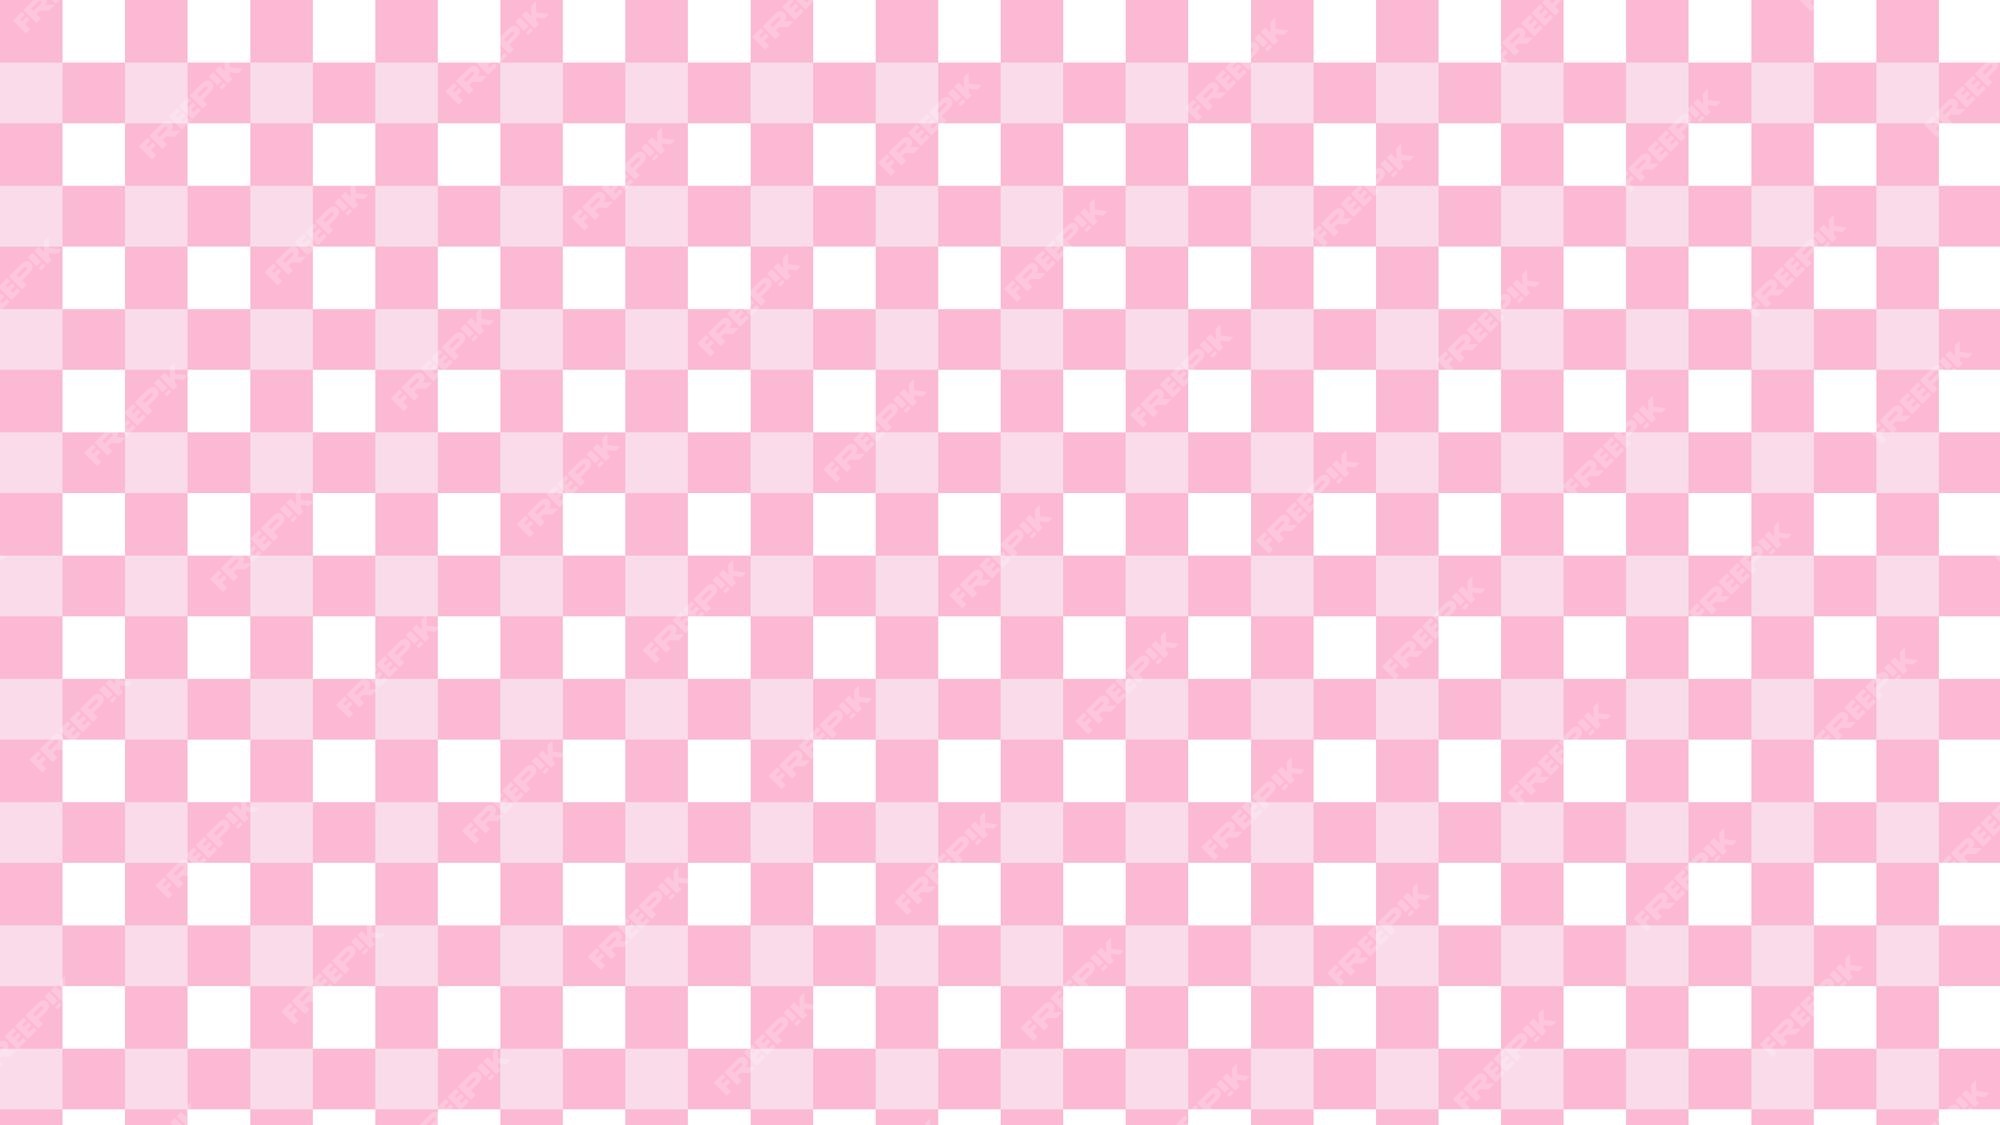 fundo xadrez sem costura forma de coração rosa 8424313 Vetor no Vecteezy